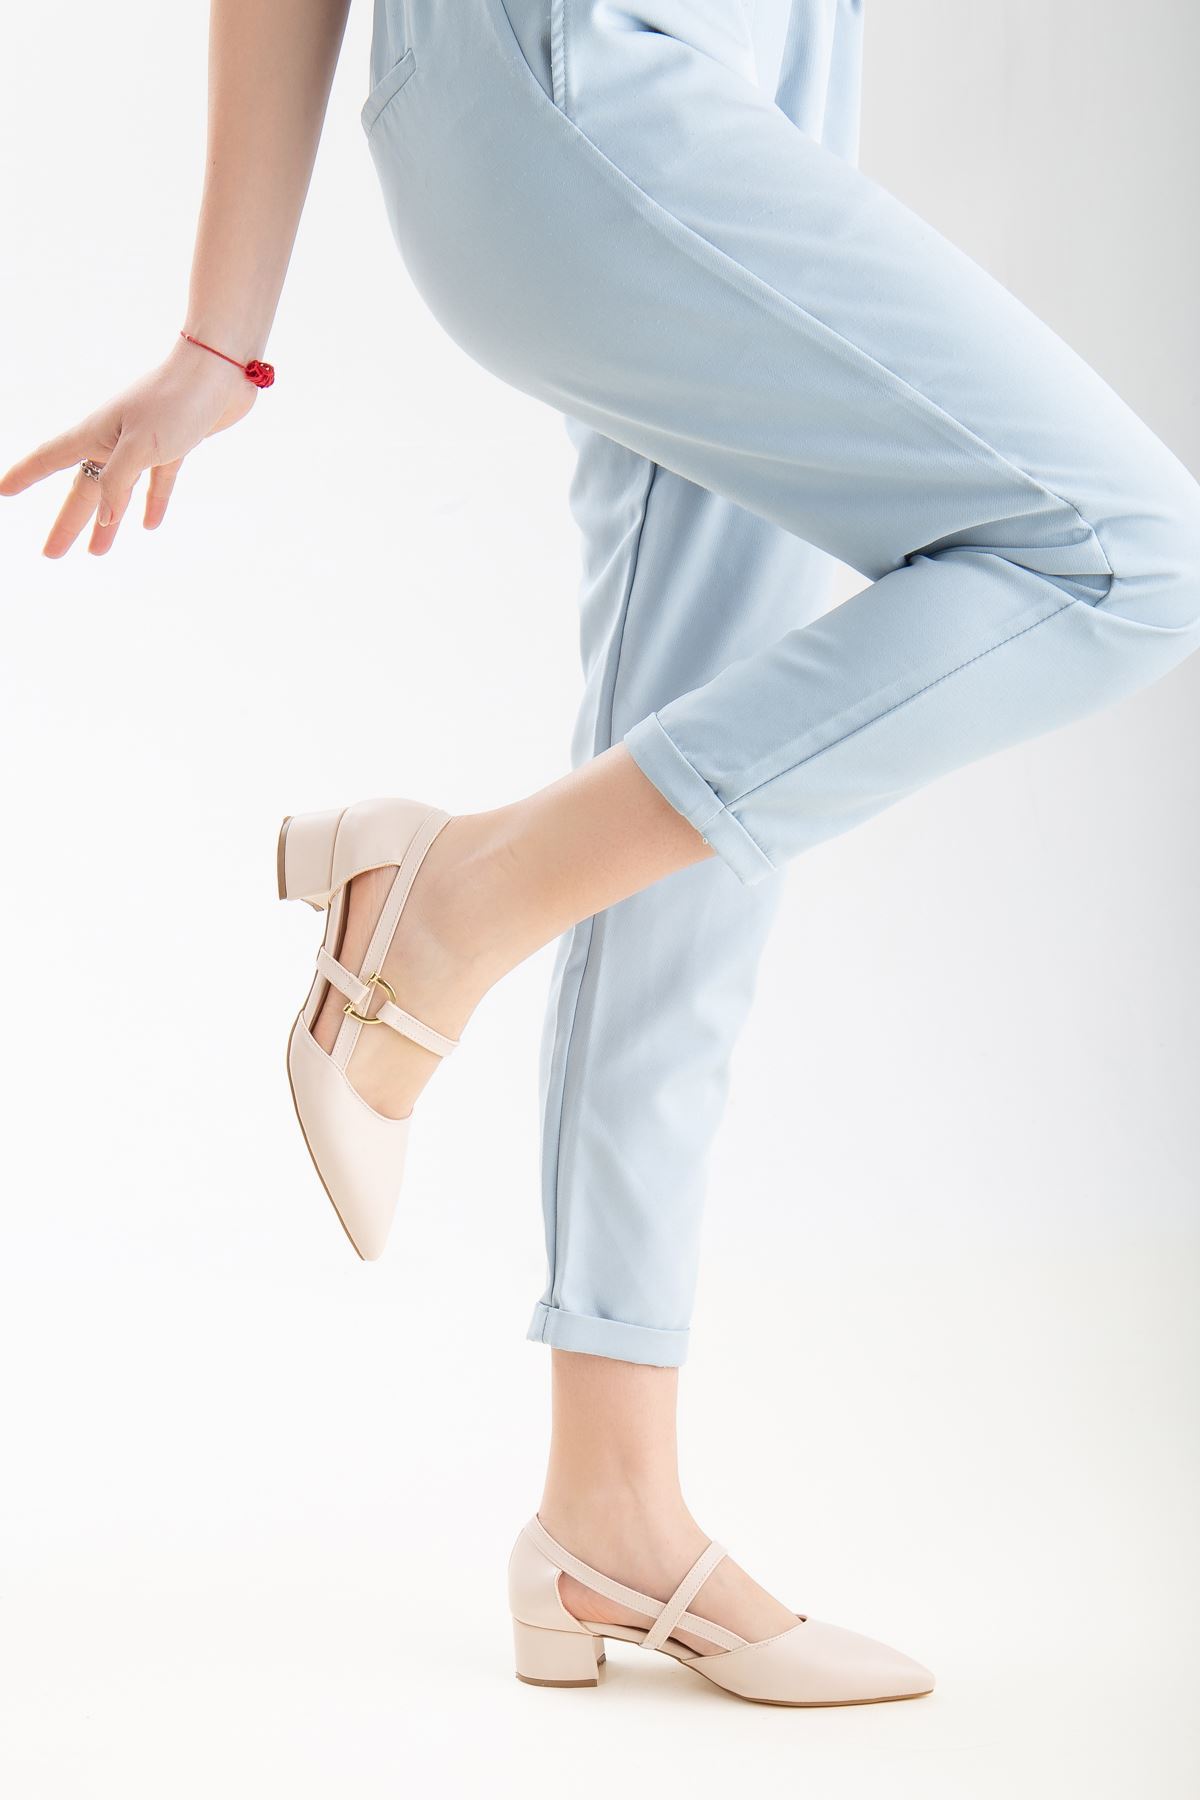 Loni Kadın Toka Detaylı Topuklu Ayakkabı Ten Cilt